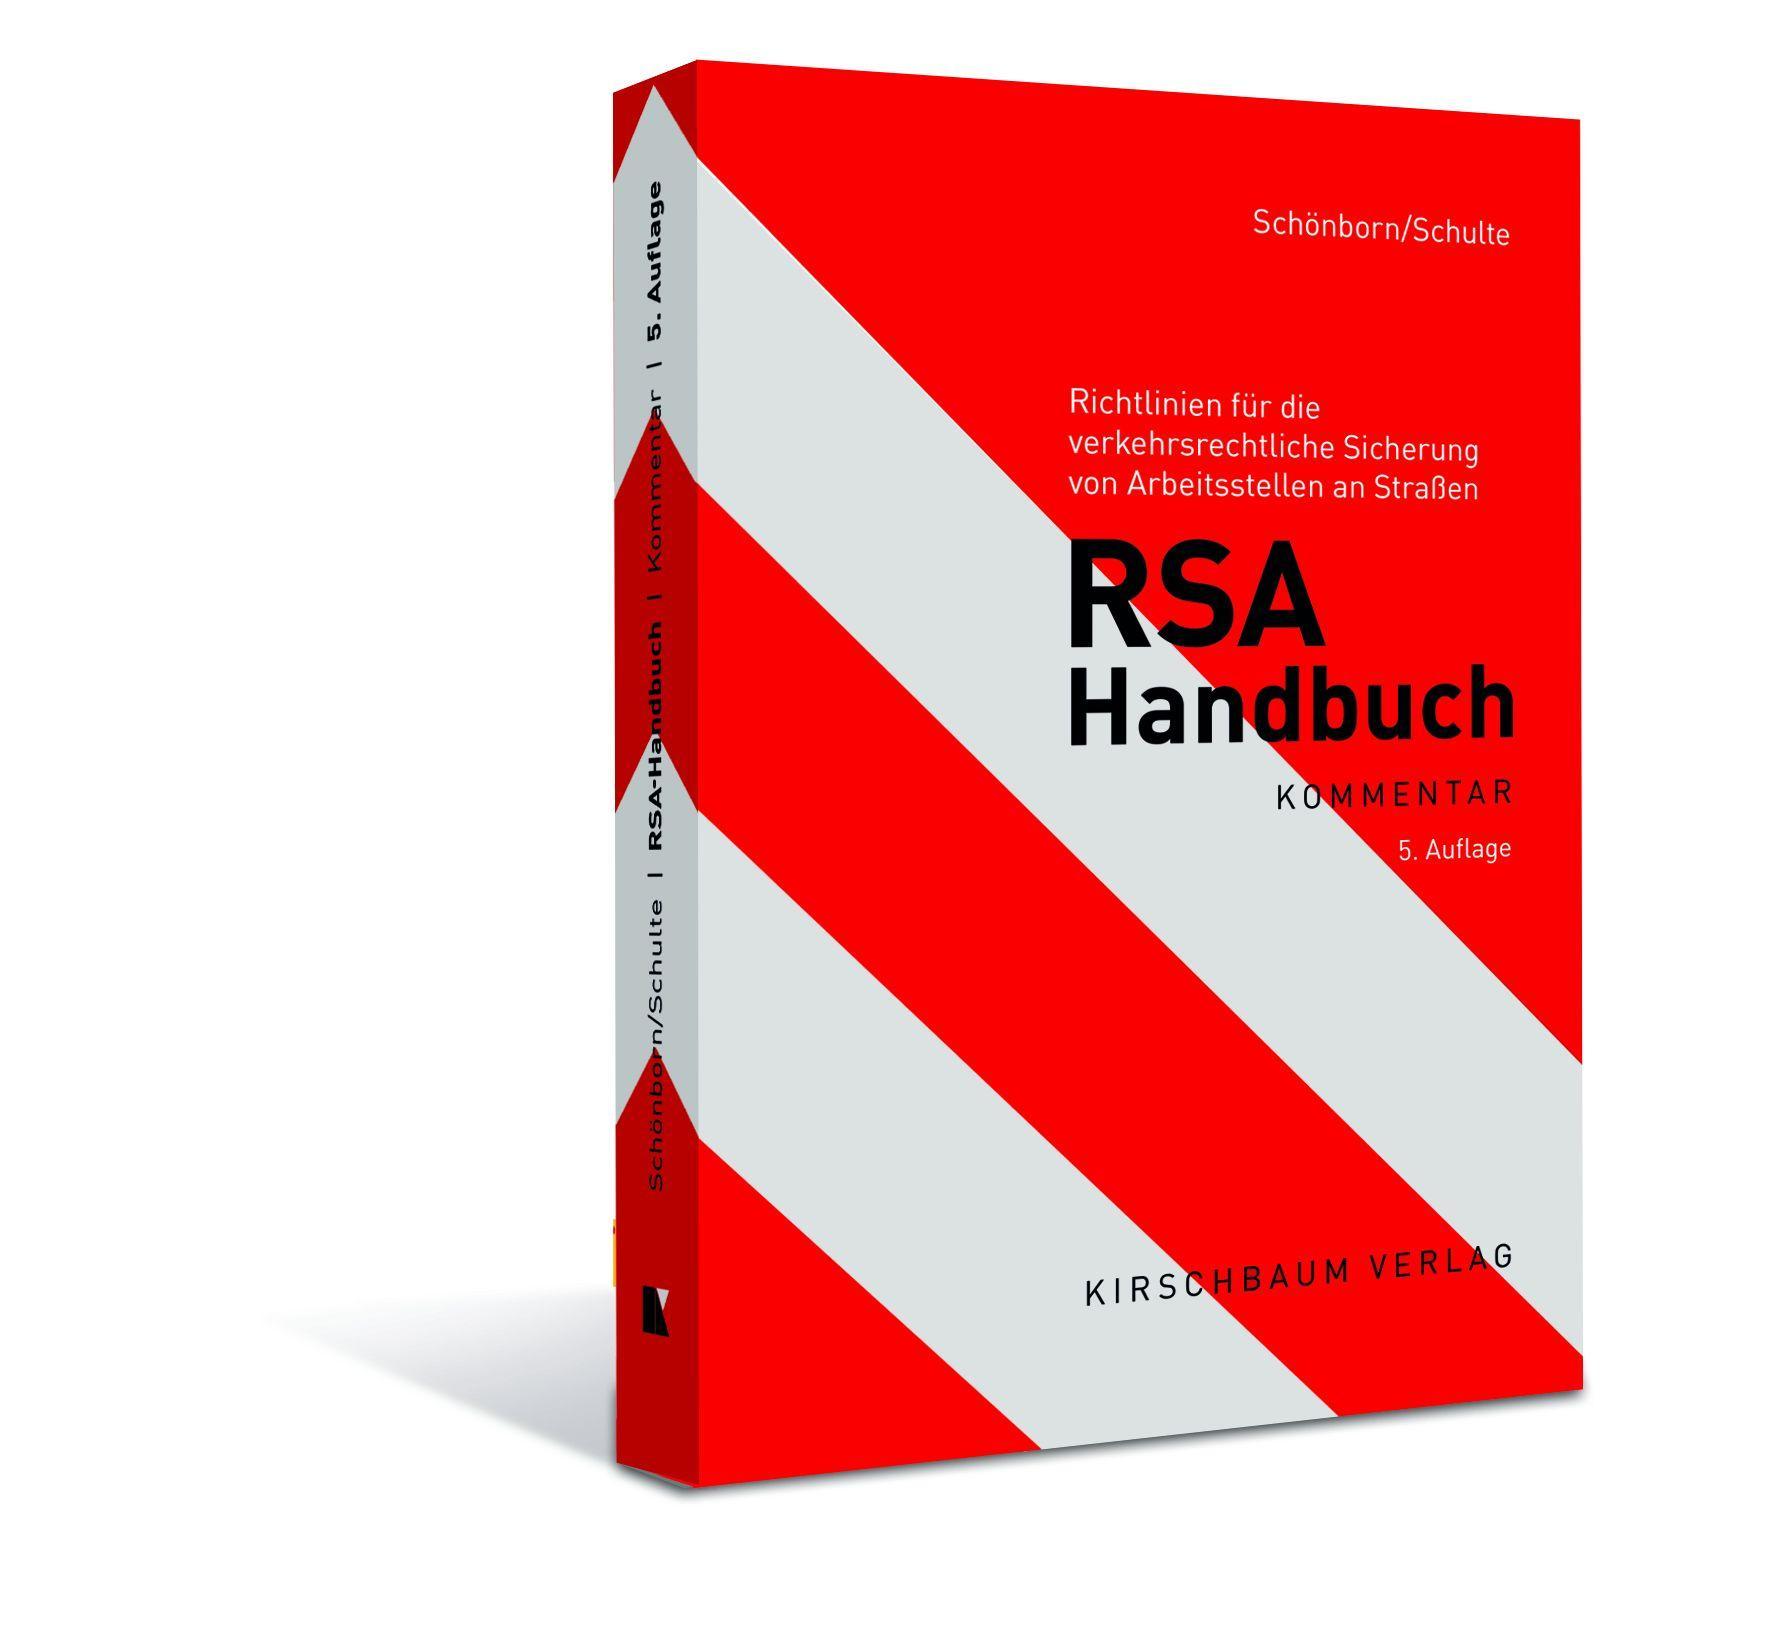 RSA Handbuch Richtlinien für die verkehrsrechtliche Sicherung von Arbeitsstellen an Straßen